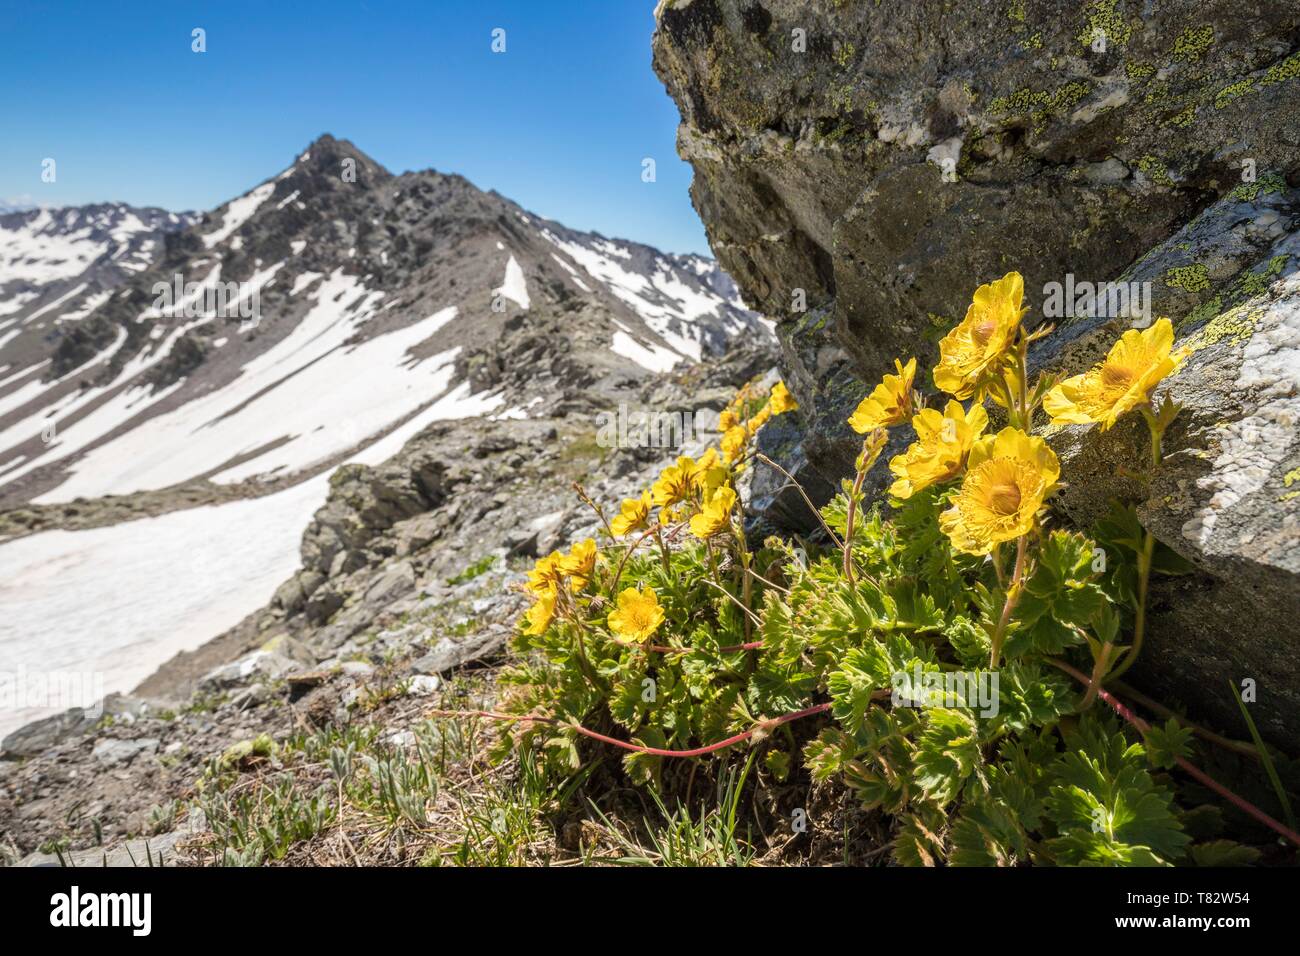 France, Hautes Alpes, Nevache, La Clarée valley, Creeping Avens flowers (Geum reptans) at Col des Muandes (2828m) Stock Photo